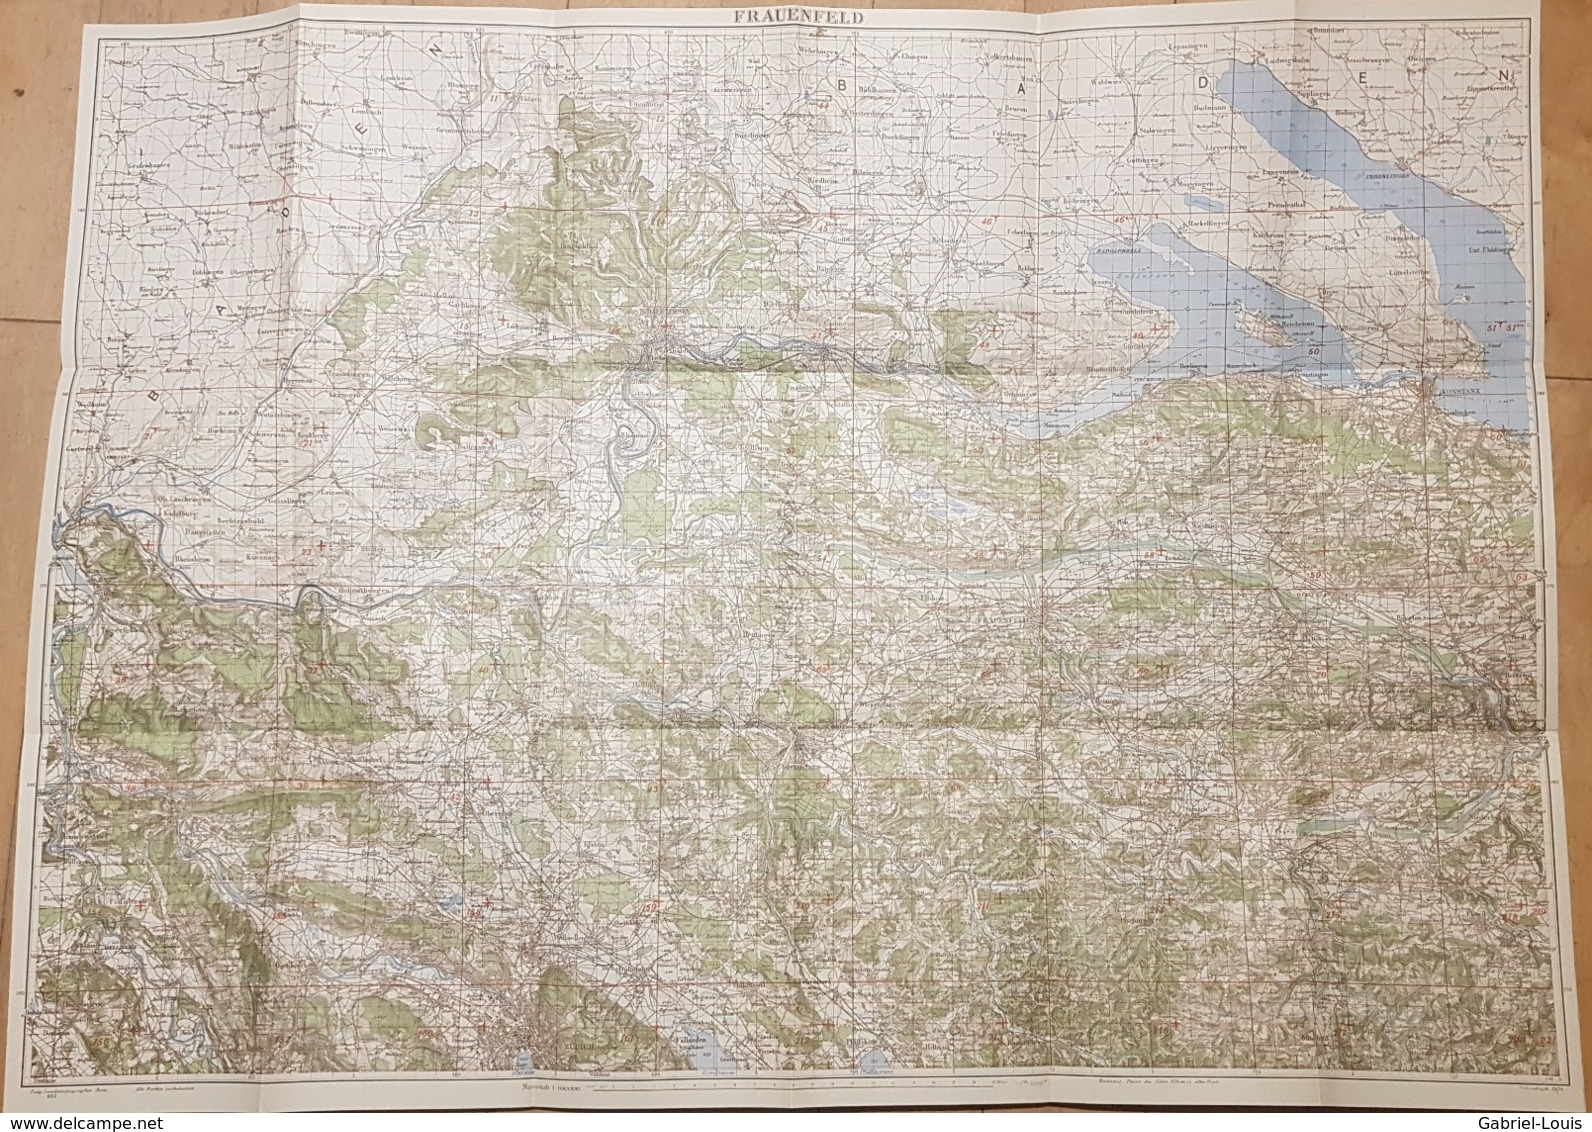 Karte Der Schweiz - Frauenfeld 1: 100000 1934 -~77 X 55 Cm Schaffhausen - Winterthur - Konstanz - Topographische Karten